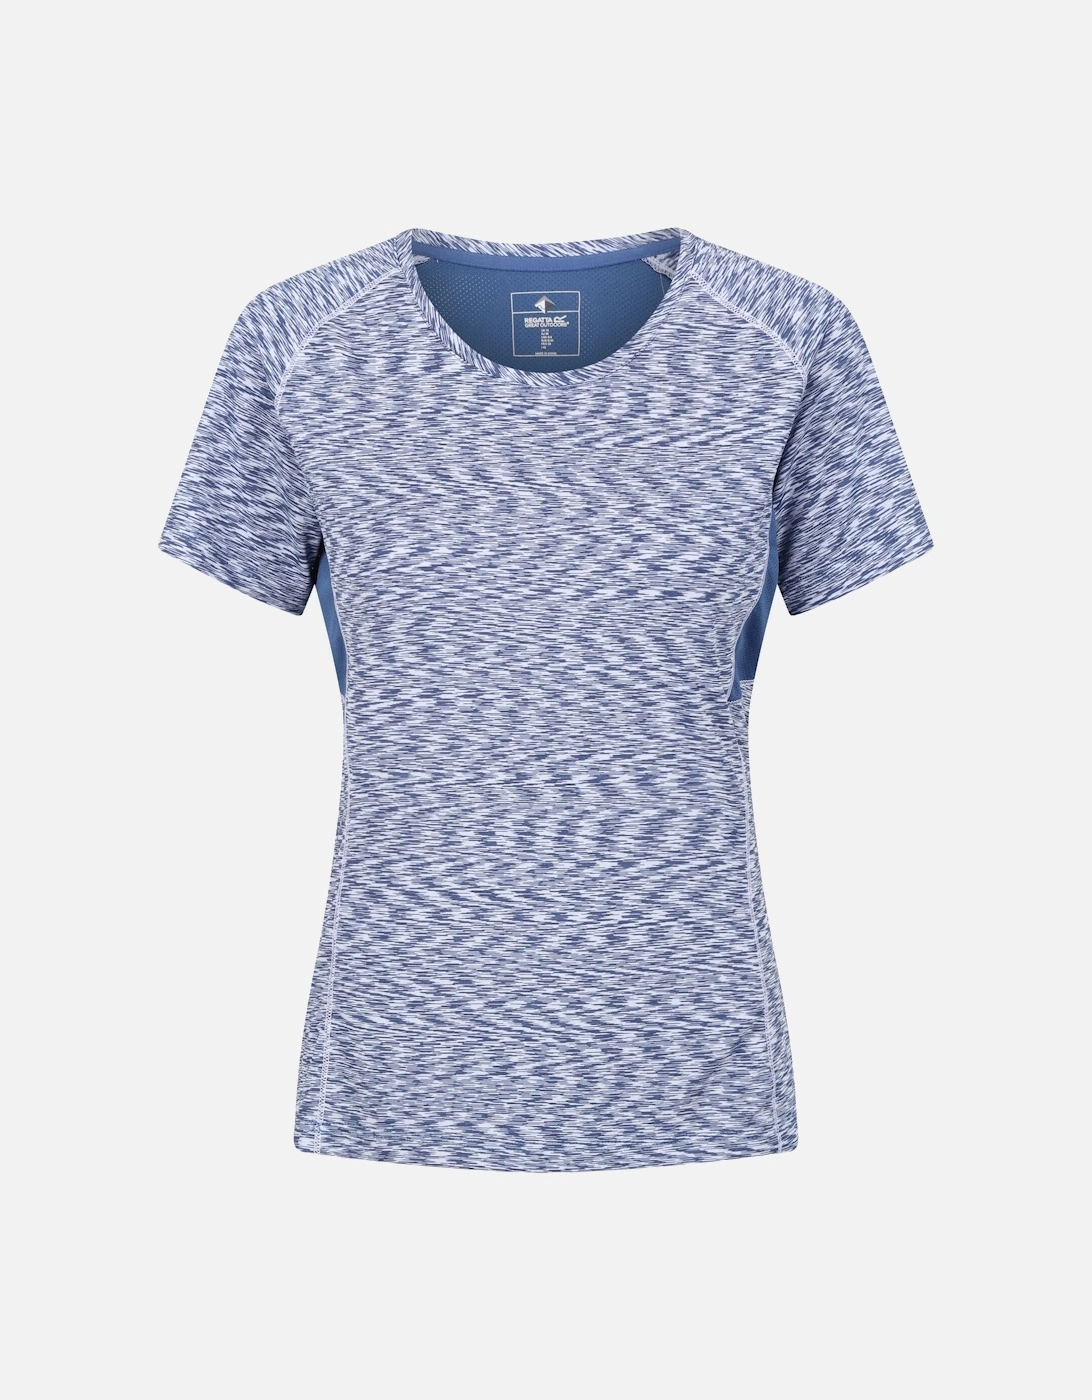 Womens/Ladies Laxley T-Shirt, 6 of 5